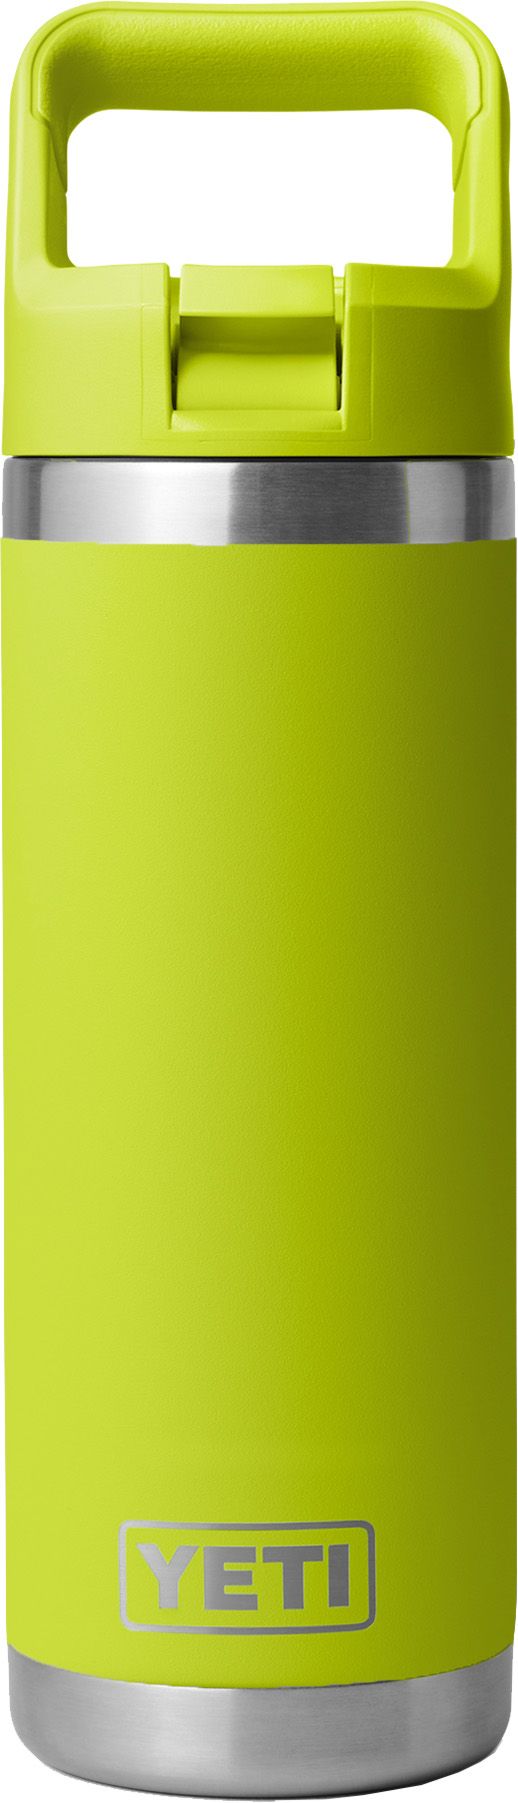 https://dks.scene7.com/is/image/dkscdn/23YETURMBLR18ZSTRHYD_Chartreuse_is?$UTPMain$